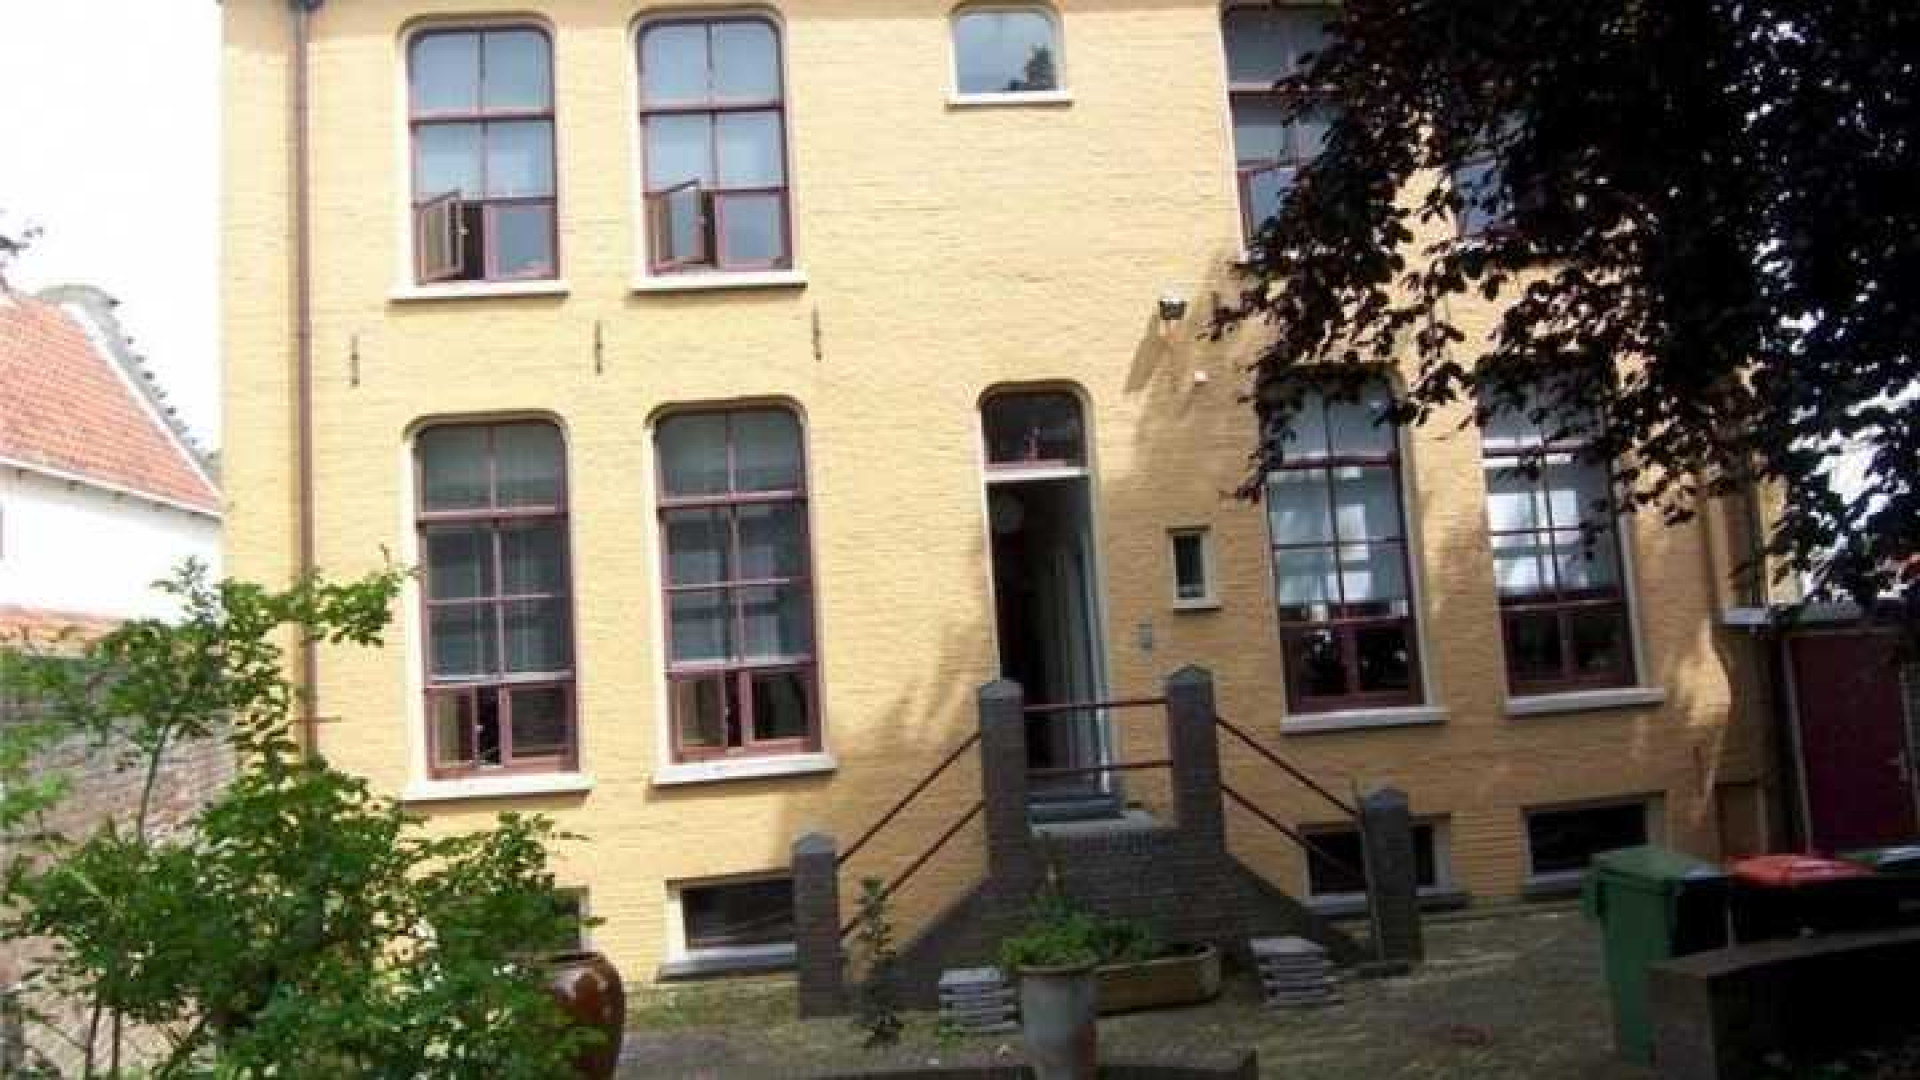 Piet Paulusma koopt stadsvilla in Harlingen. Zie foto's